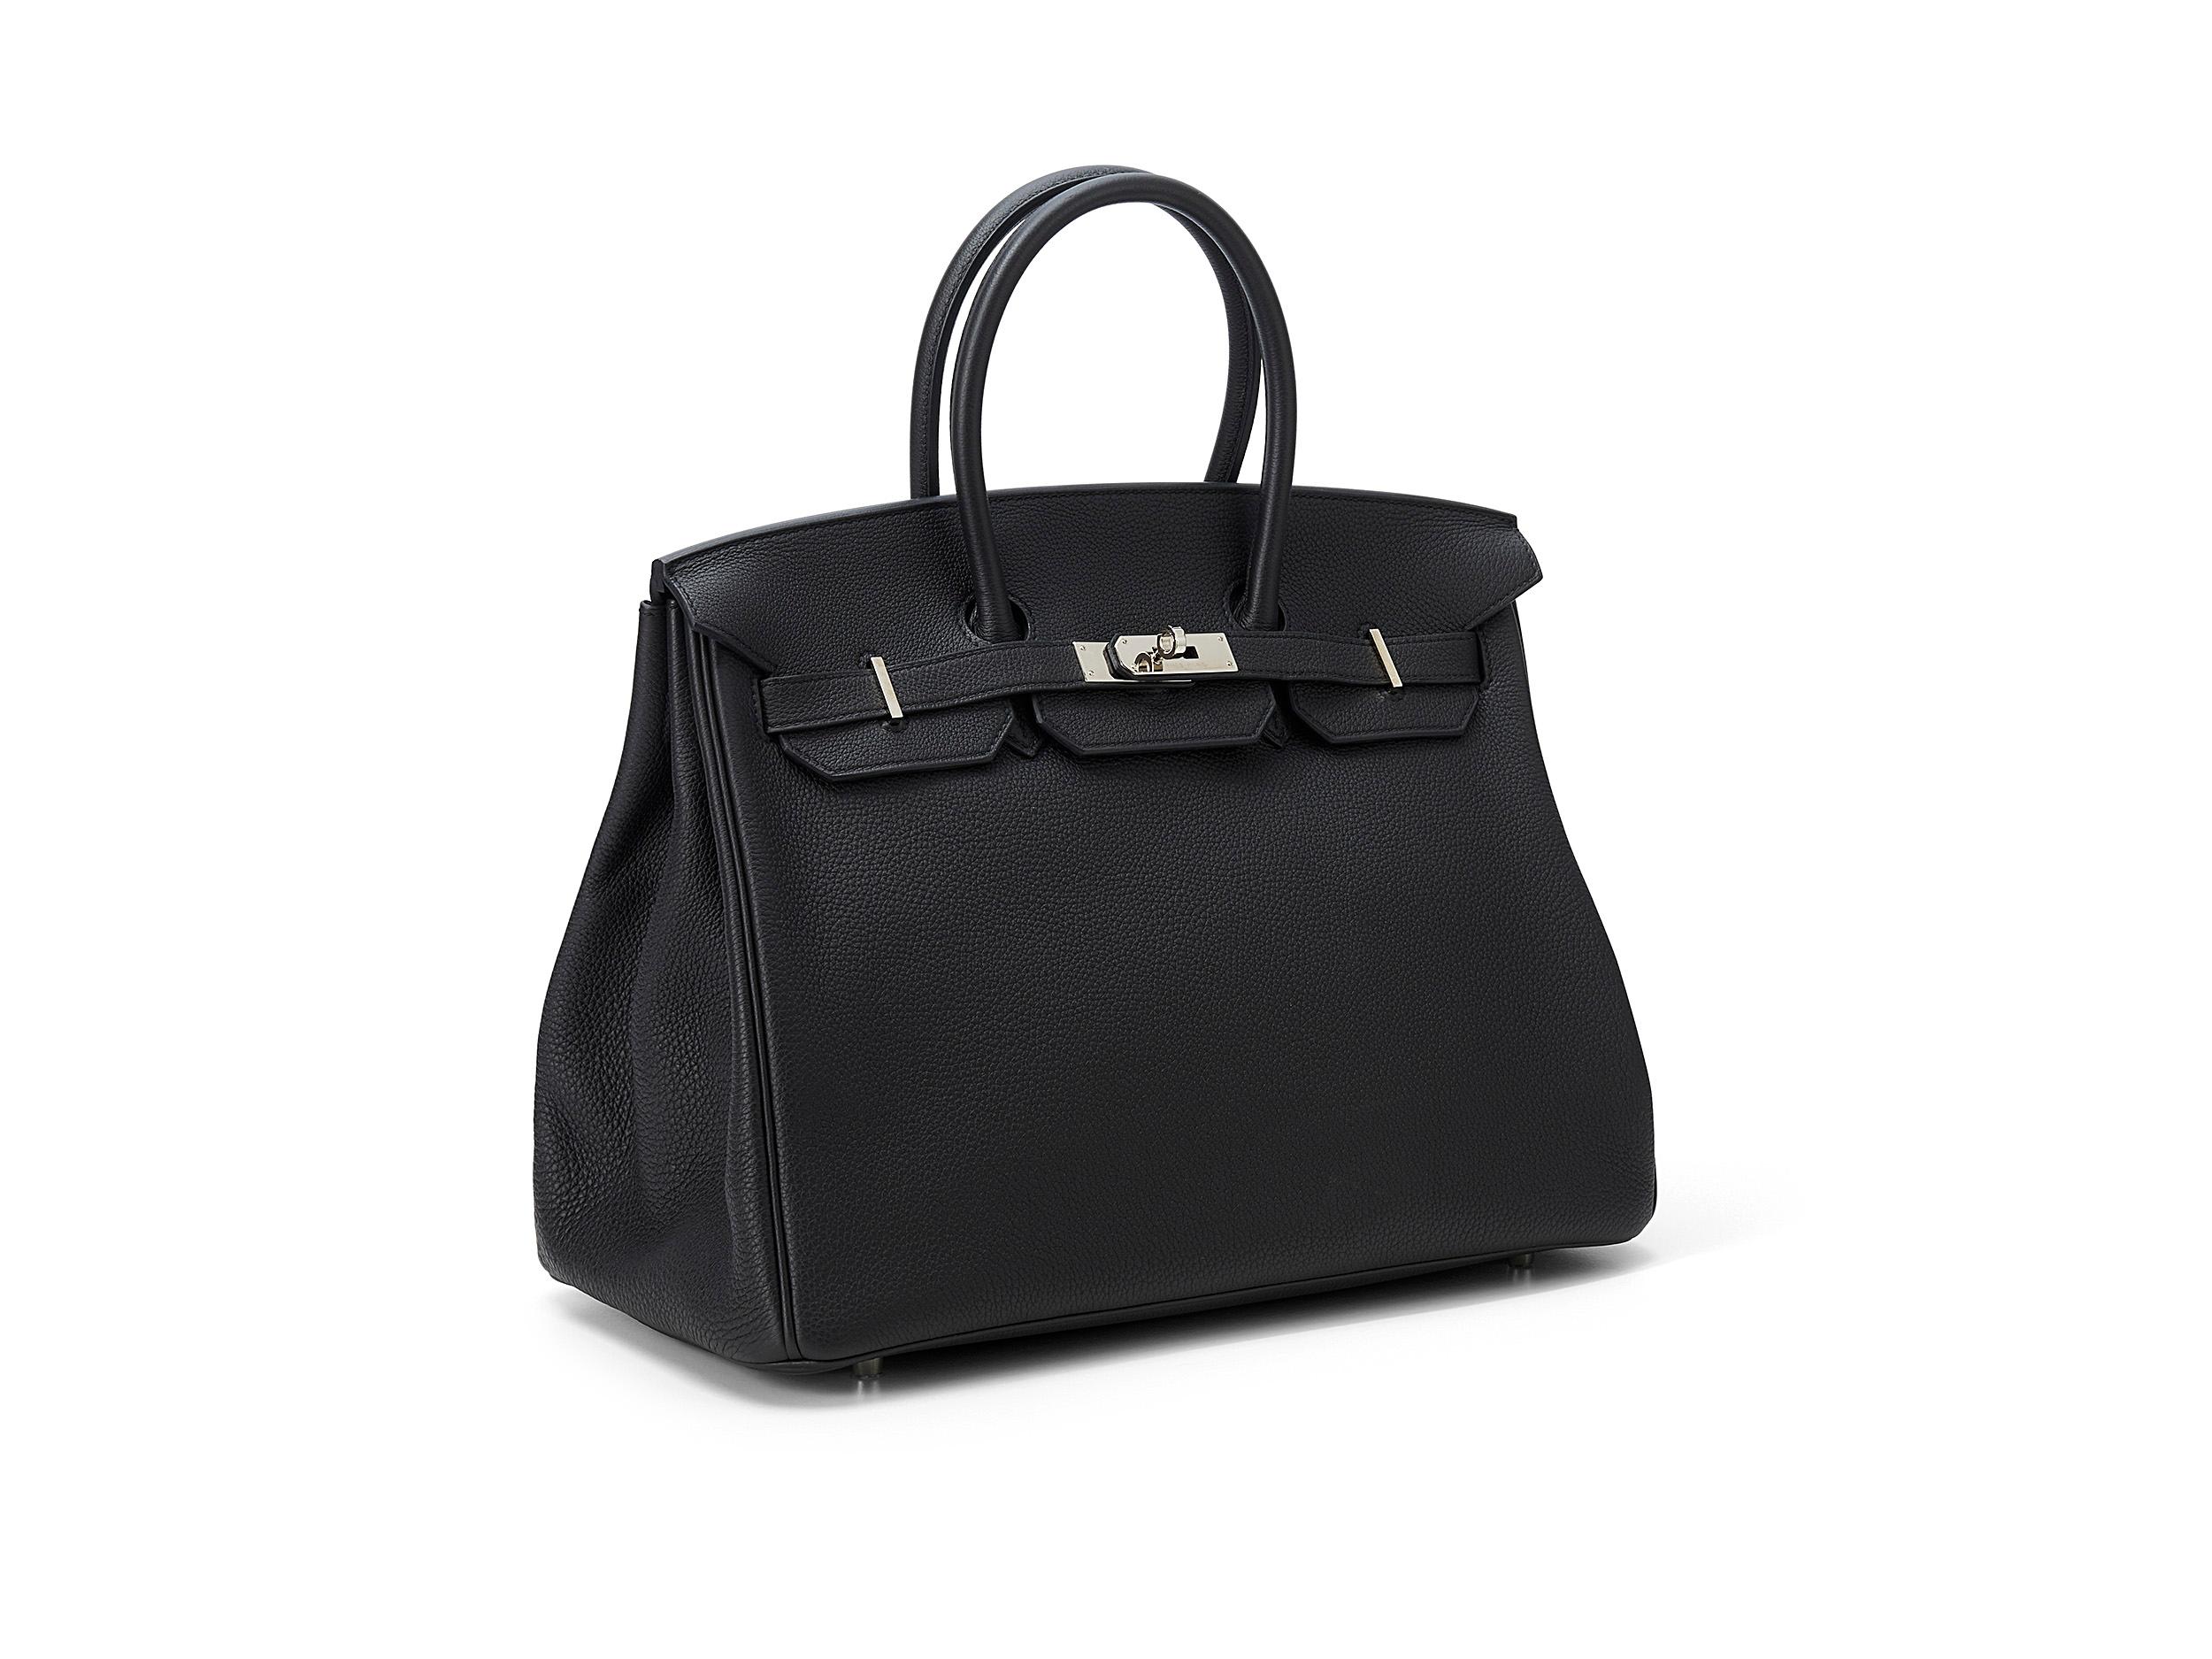 Hermès Birkin 35 aus schwarzem und togolesischem Leder mit Palladiumbeschlägen. Die Tasche ist in einem guten Zustand, die Hardware und das Schloss haben Kratzer und Verfärbungen. Kommt als kompletter Satz mit der Originalquittung. Stempel A (2017)